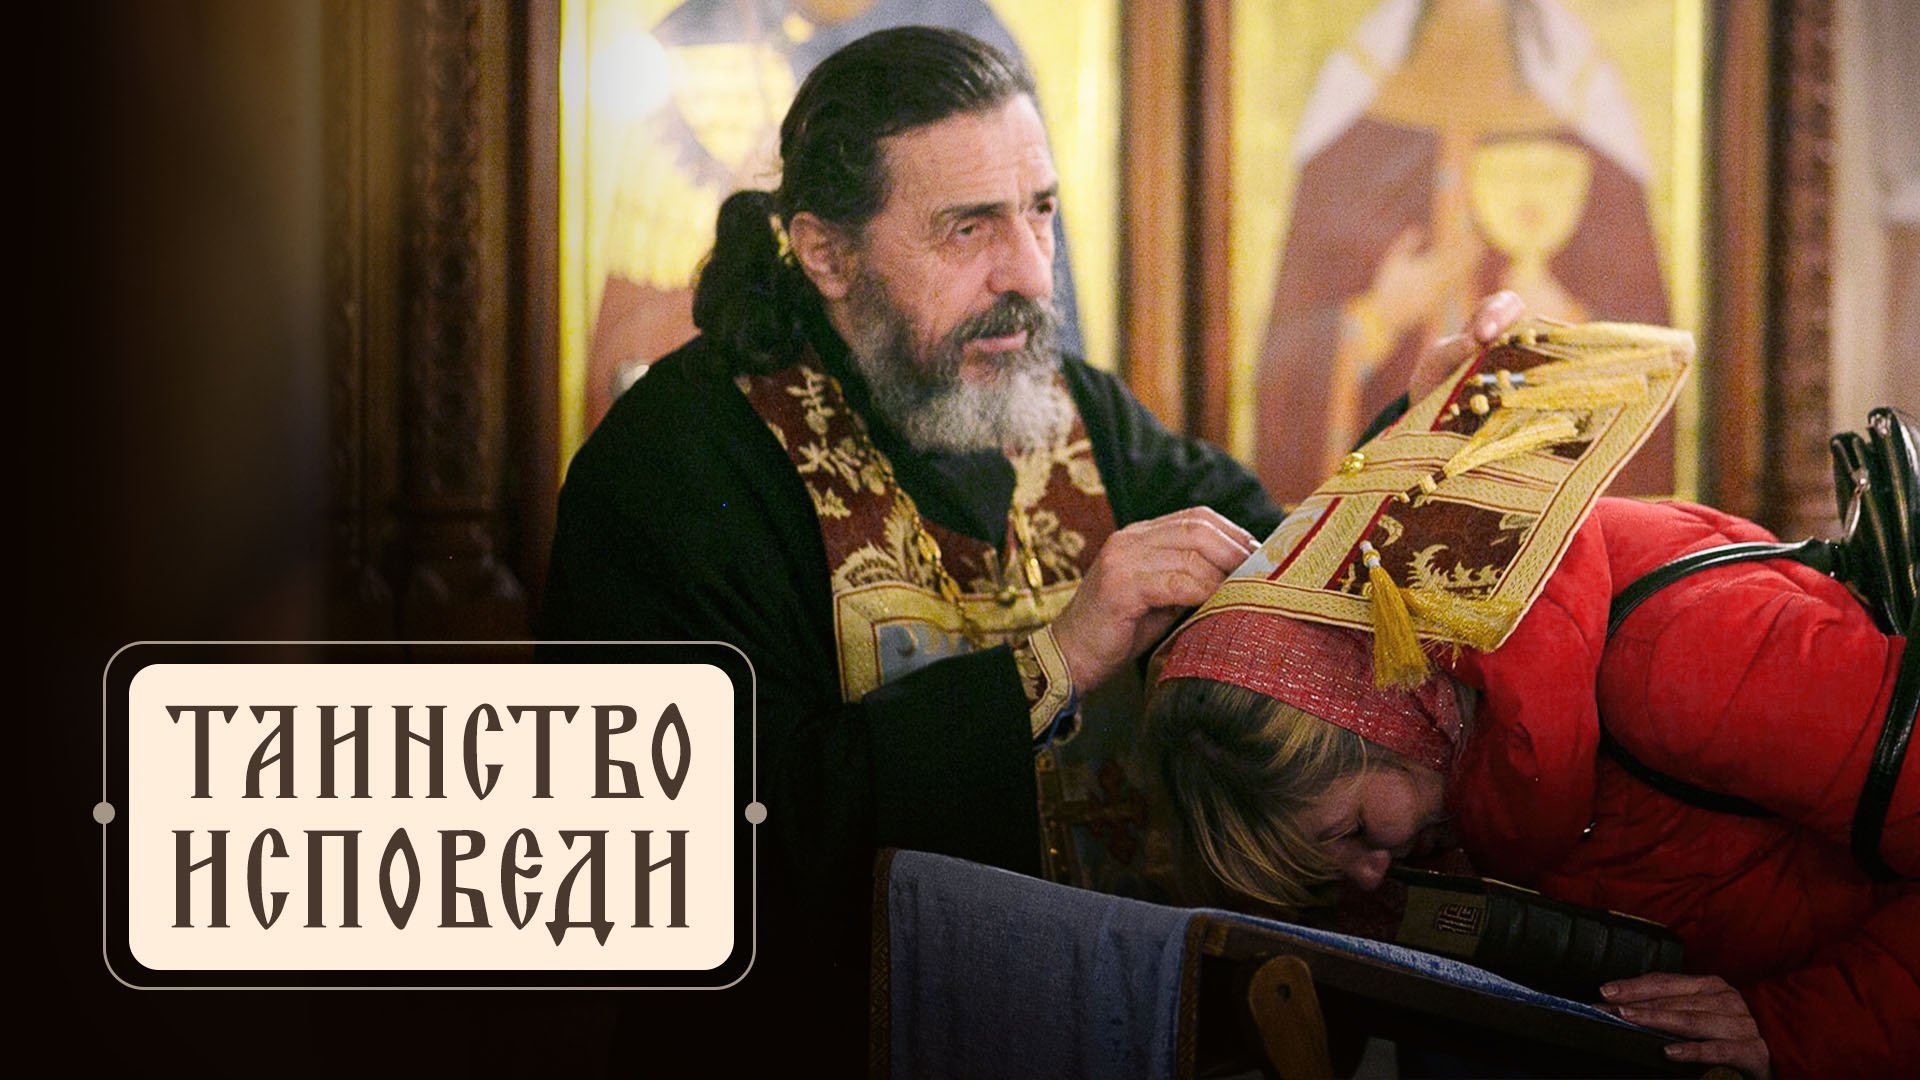 Таинство Исповеди в Православной Церкви. Подробно о важном!